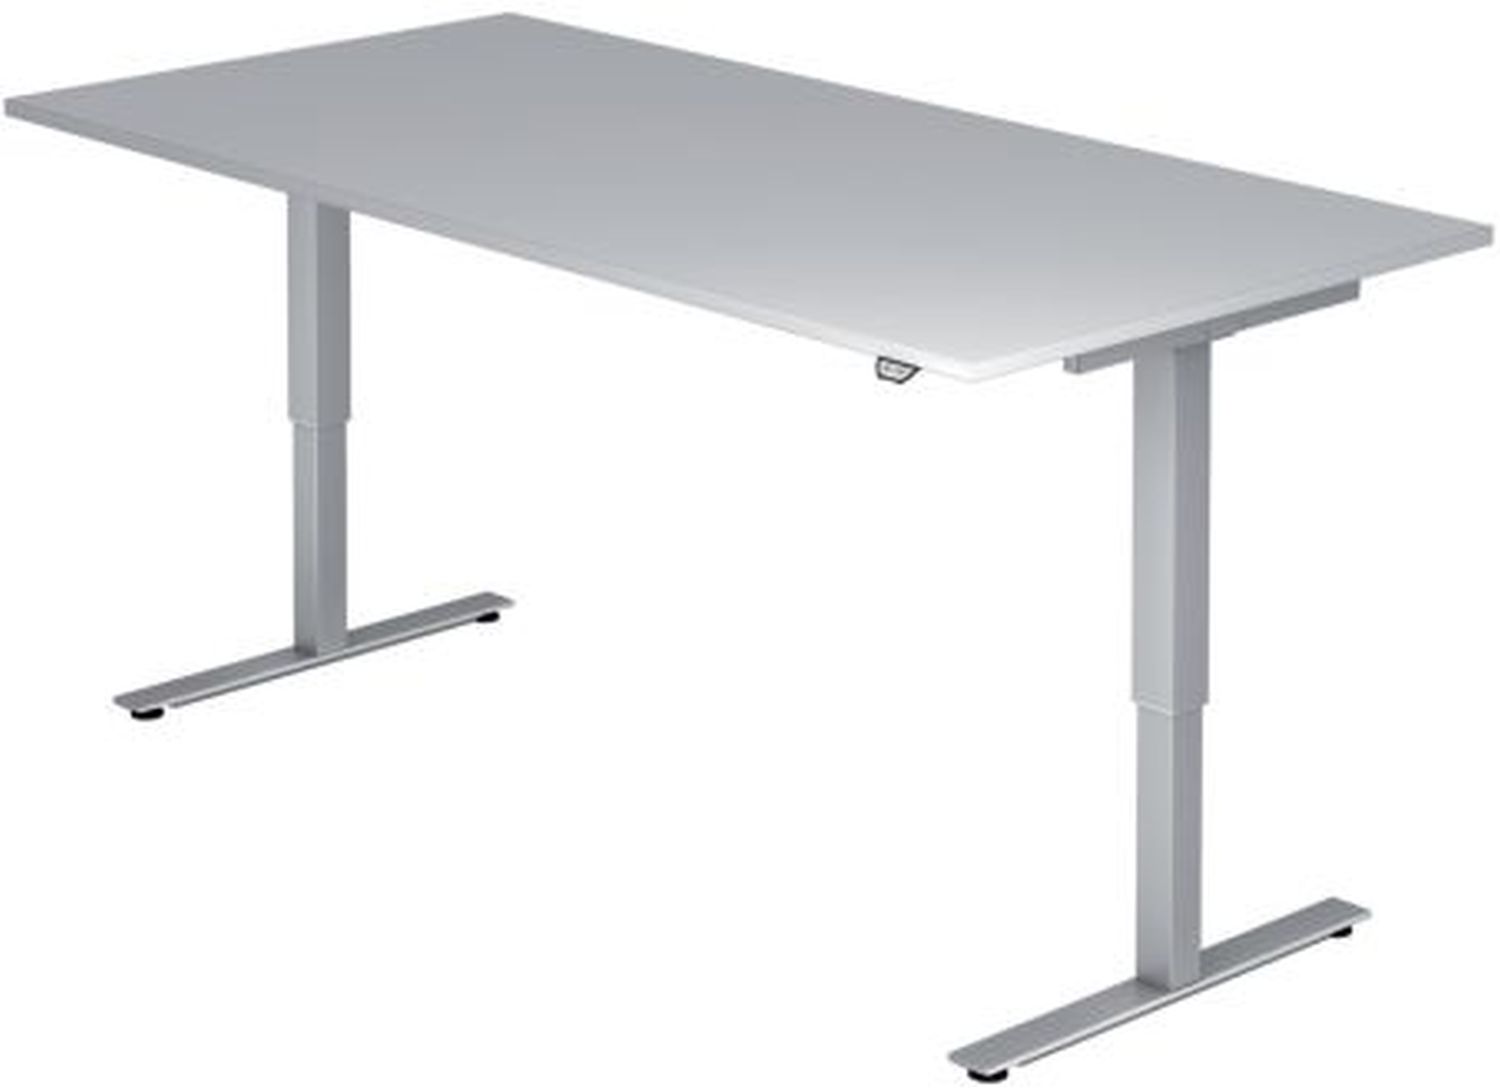 Sitz-Steh-Schreibtisch mit T-Fuß - 120 x 72-119 x 80 cm, elektr. höhenverstellbar, Grau